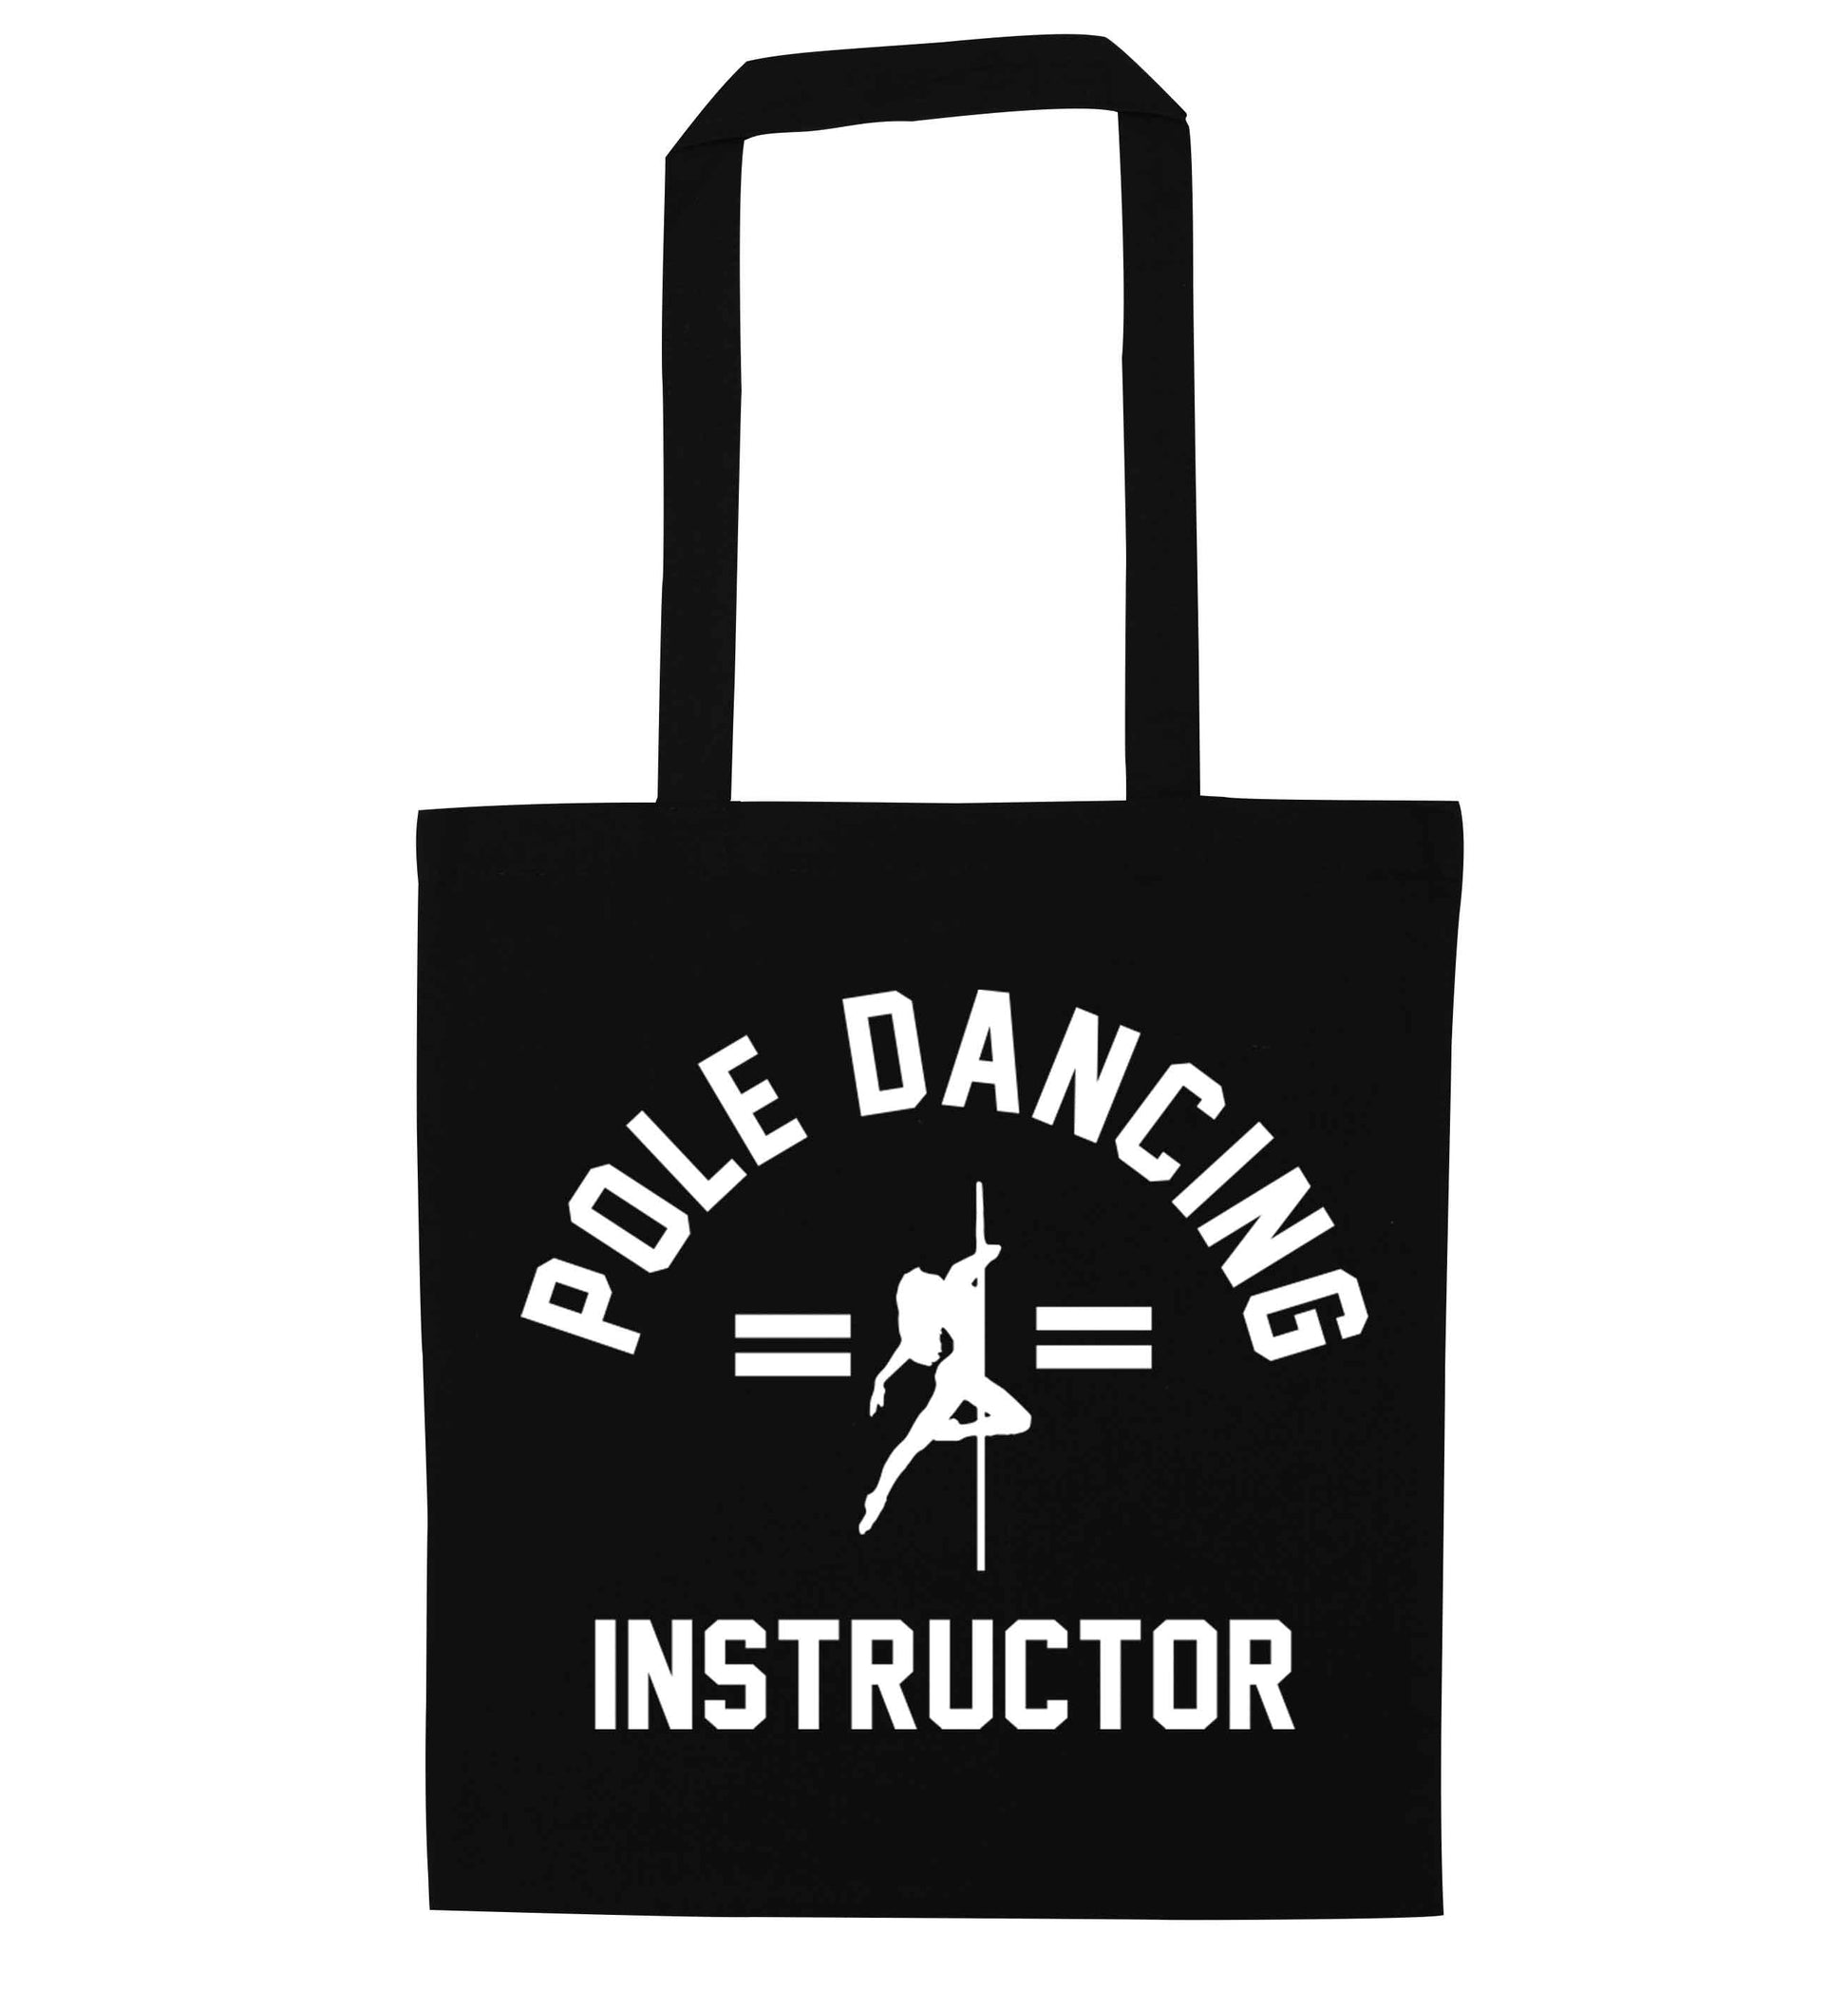 Pole dancing instructor black tote bag